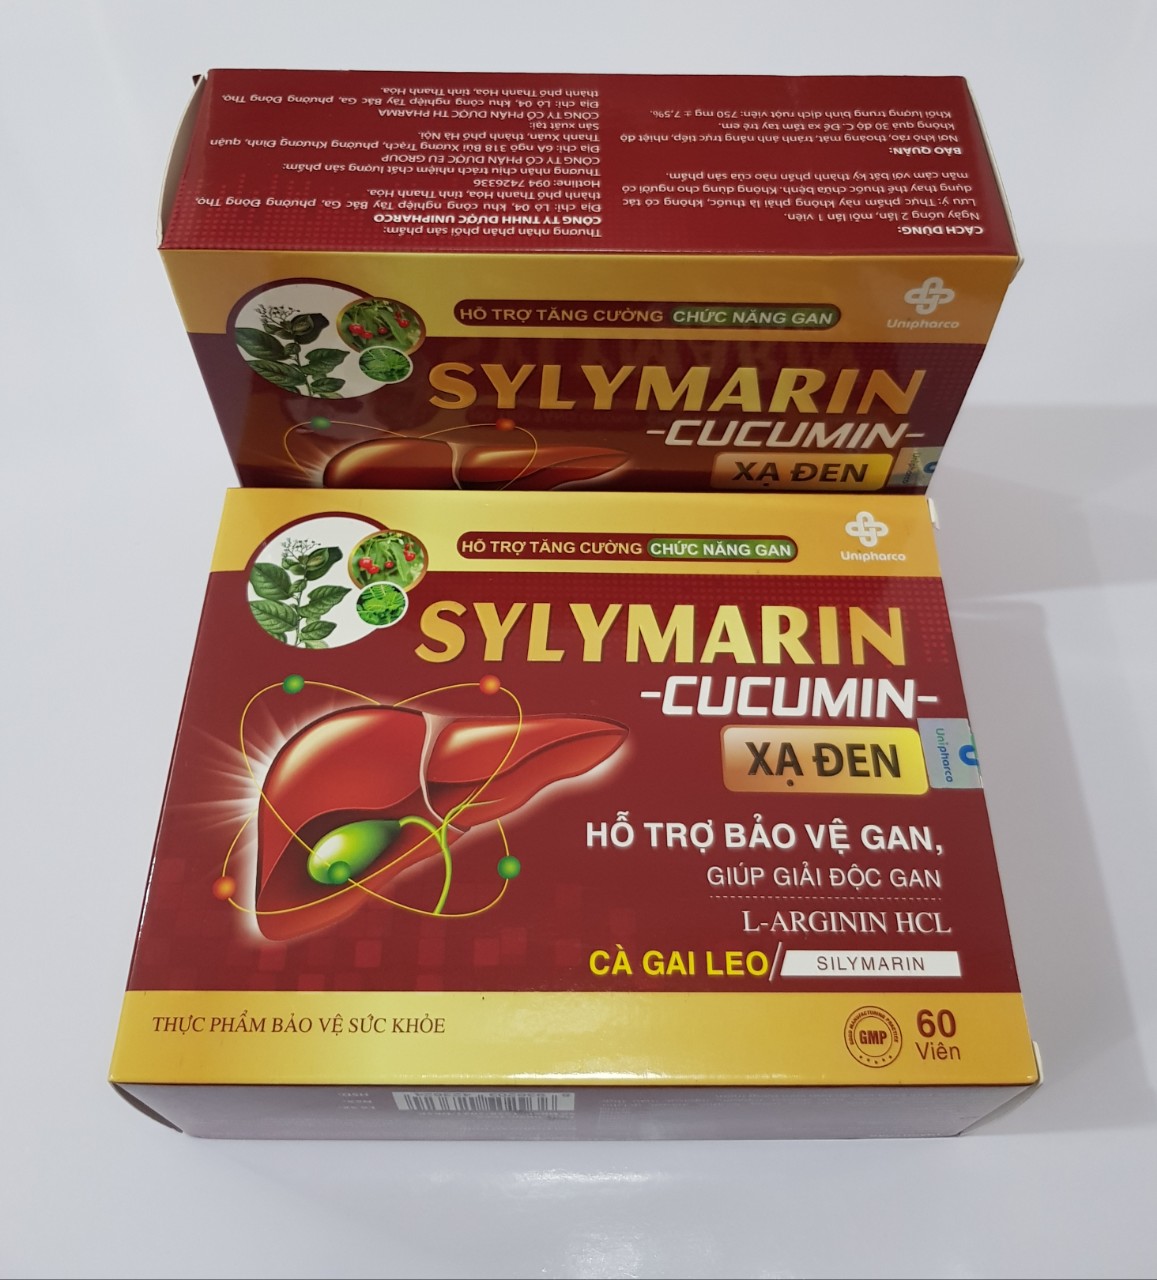 Viên Sylymarin - Cucumin xạ đen hỗ trợ bảo vệ gan, giải độc gan,tăng cường chức năng gan